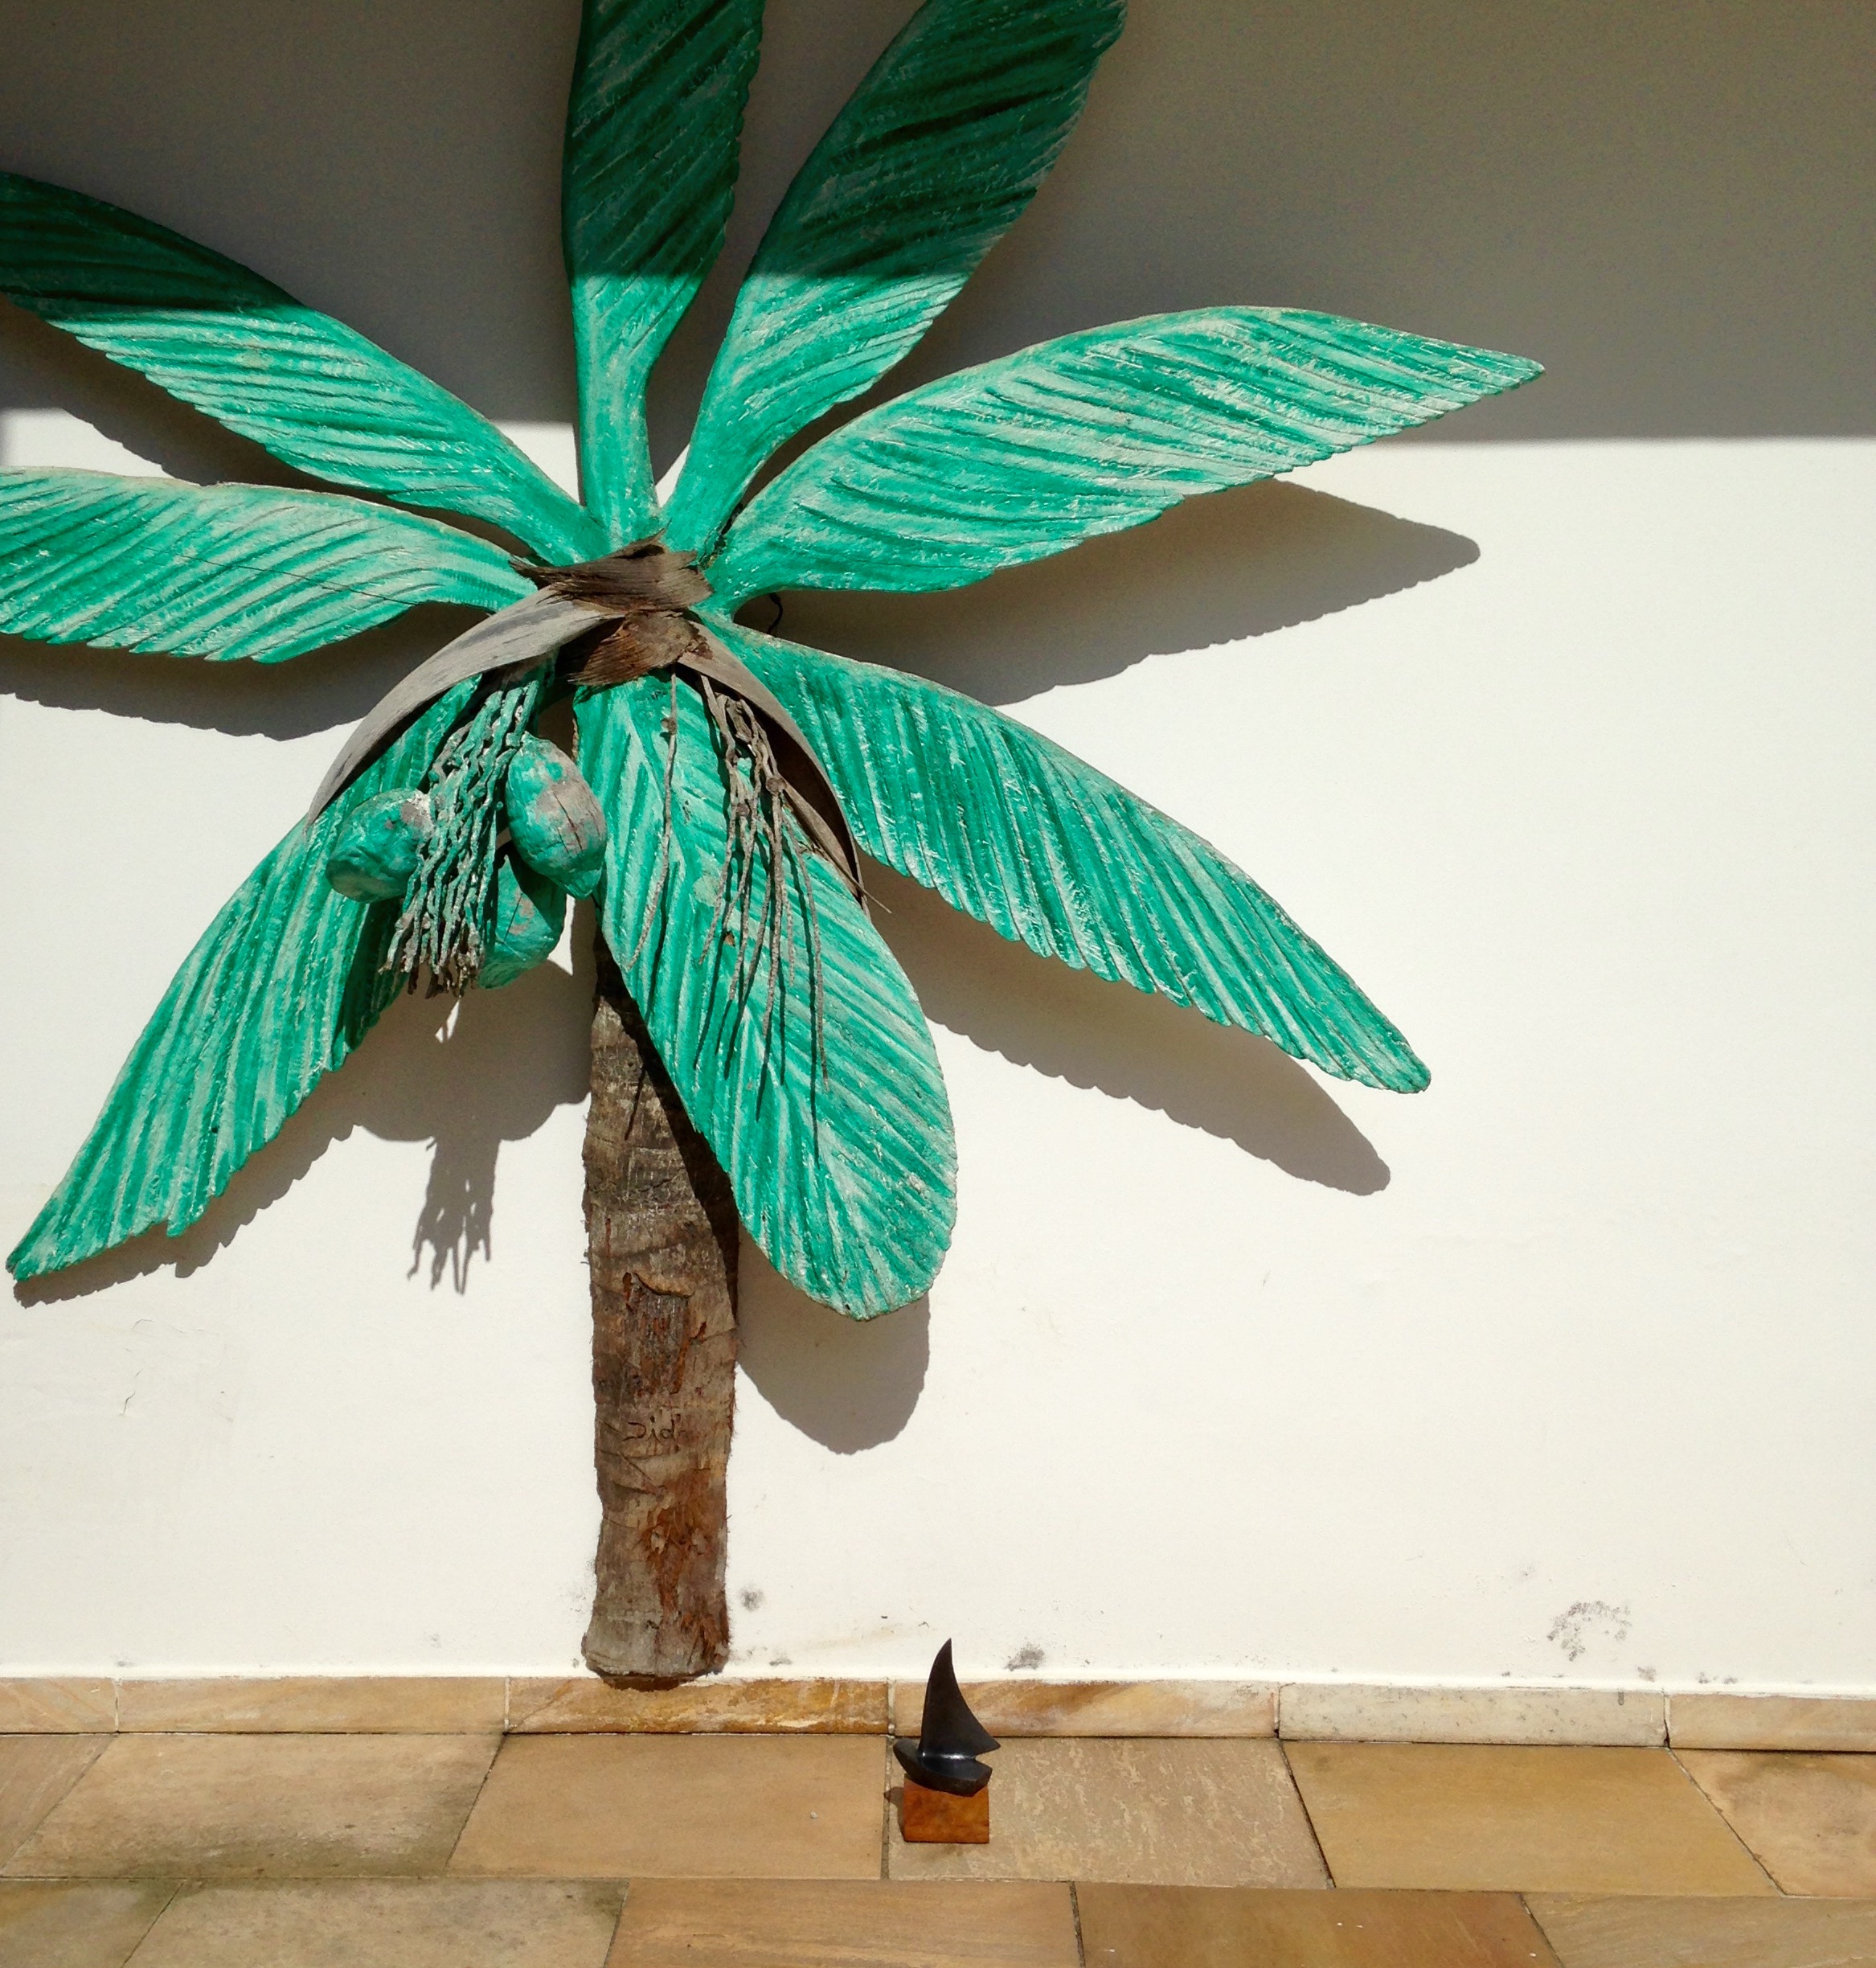 Escultura de Palmeira em madeira colocada junto a parede externa de casa em tamanho natural com o tronco marrom e as folhas verdes